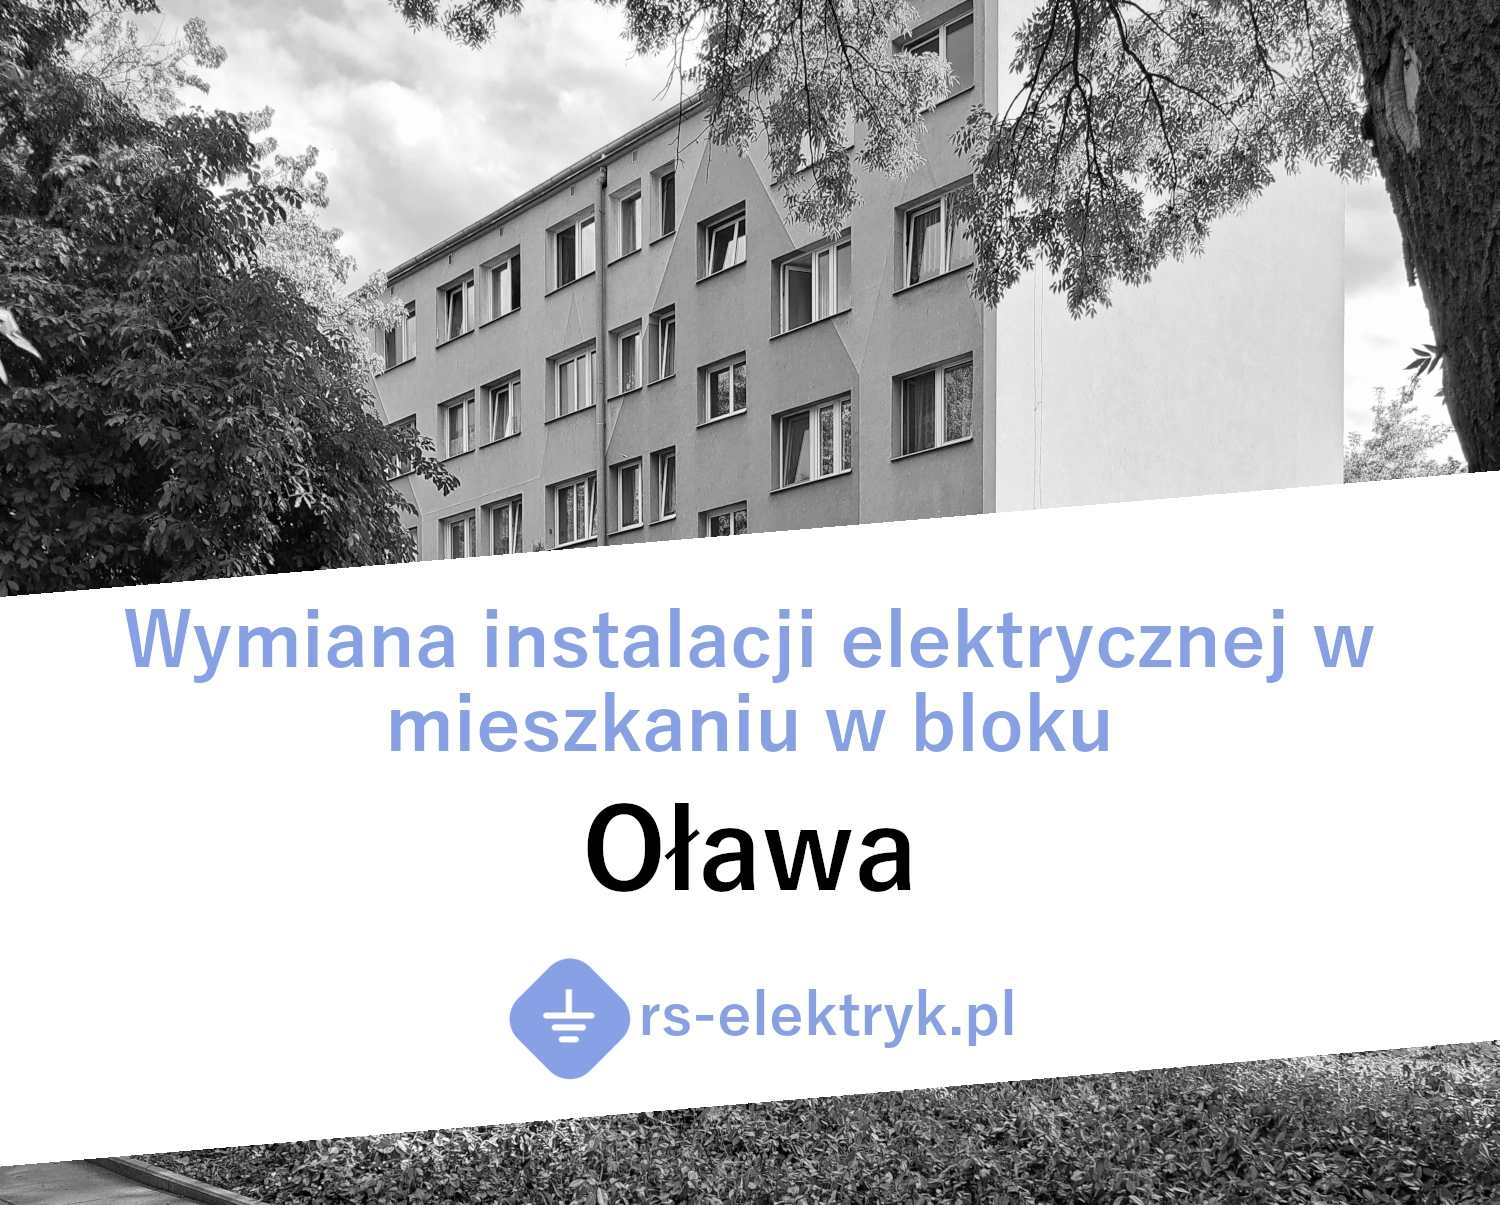 Wymiana instalacji elektrycznej w mieszkaniu w bloku (Oława)